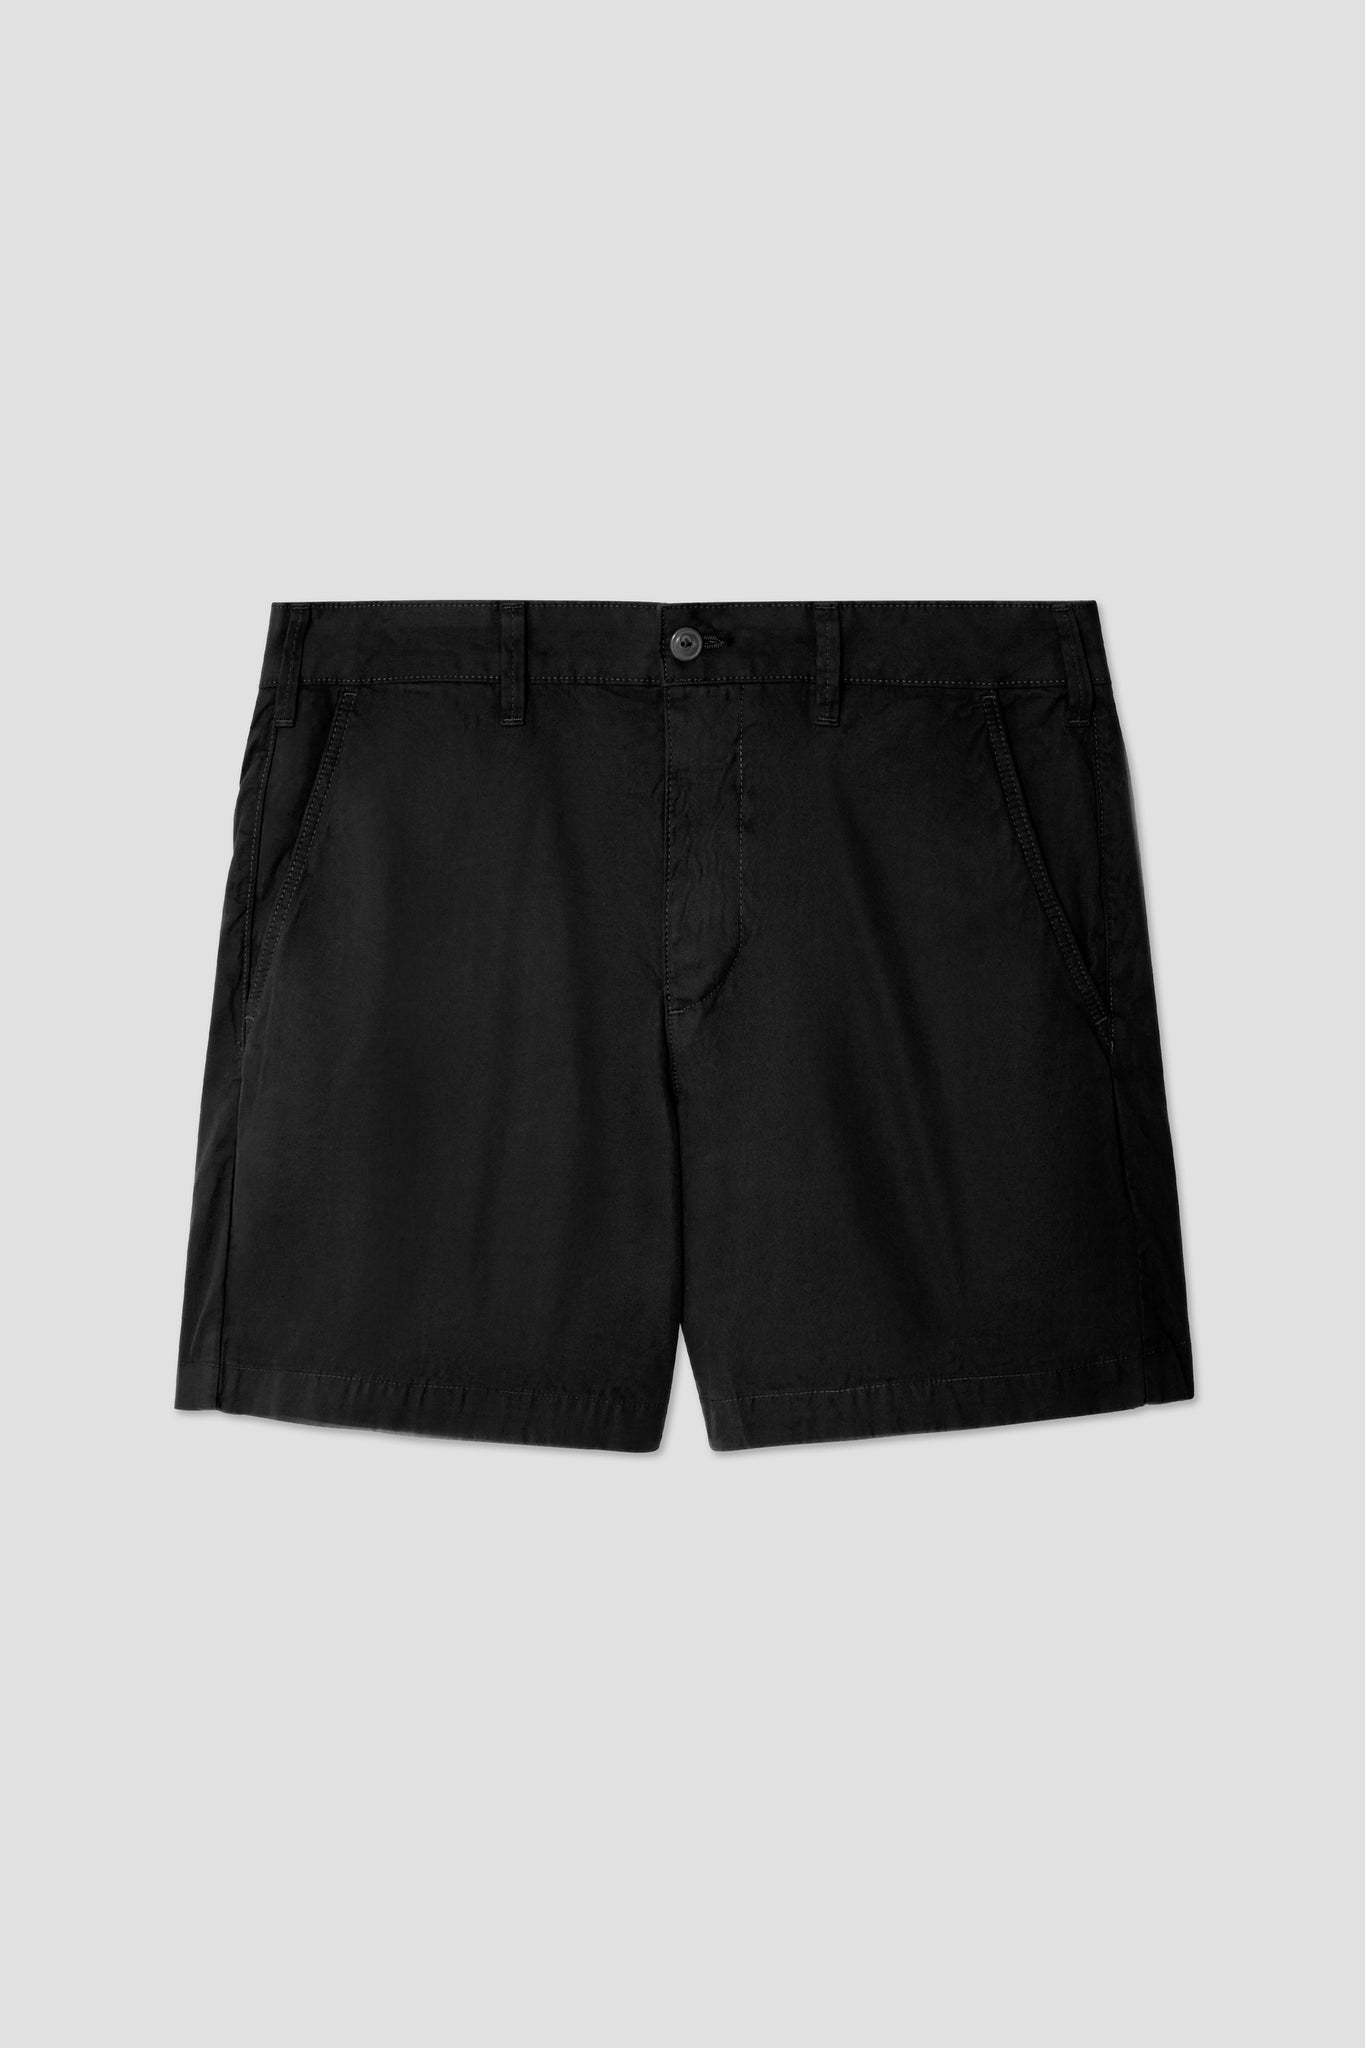 6" Twill Standard Bermuda Shorts